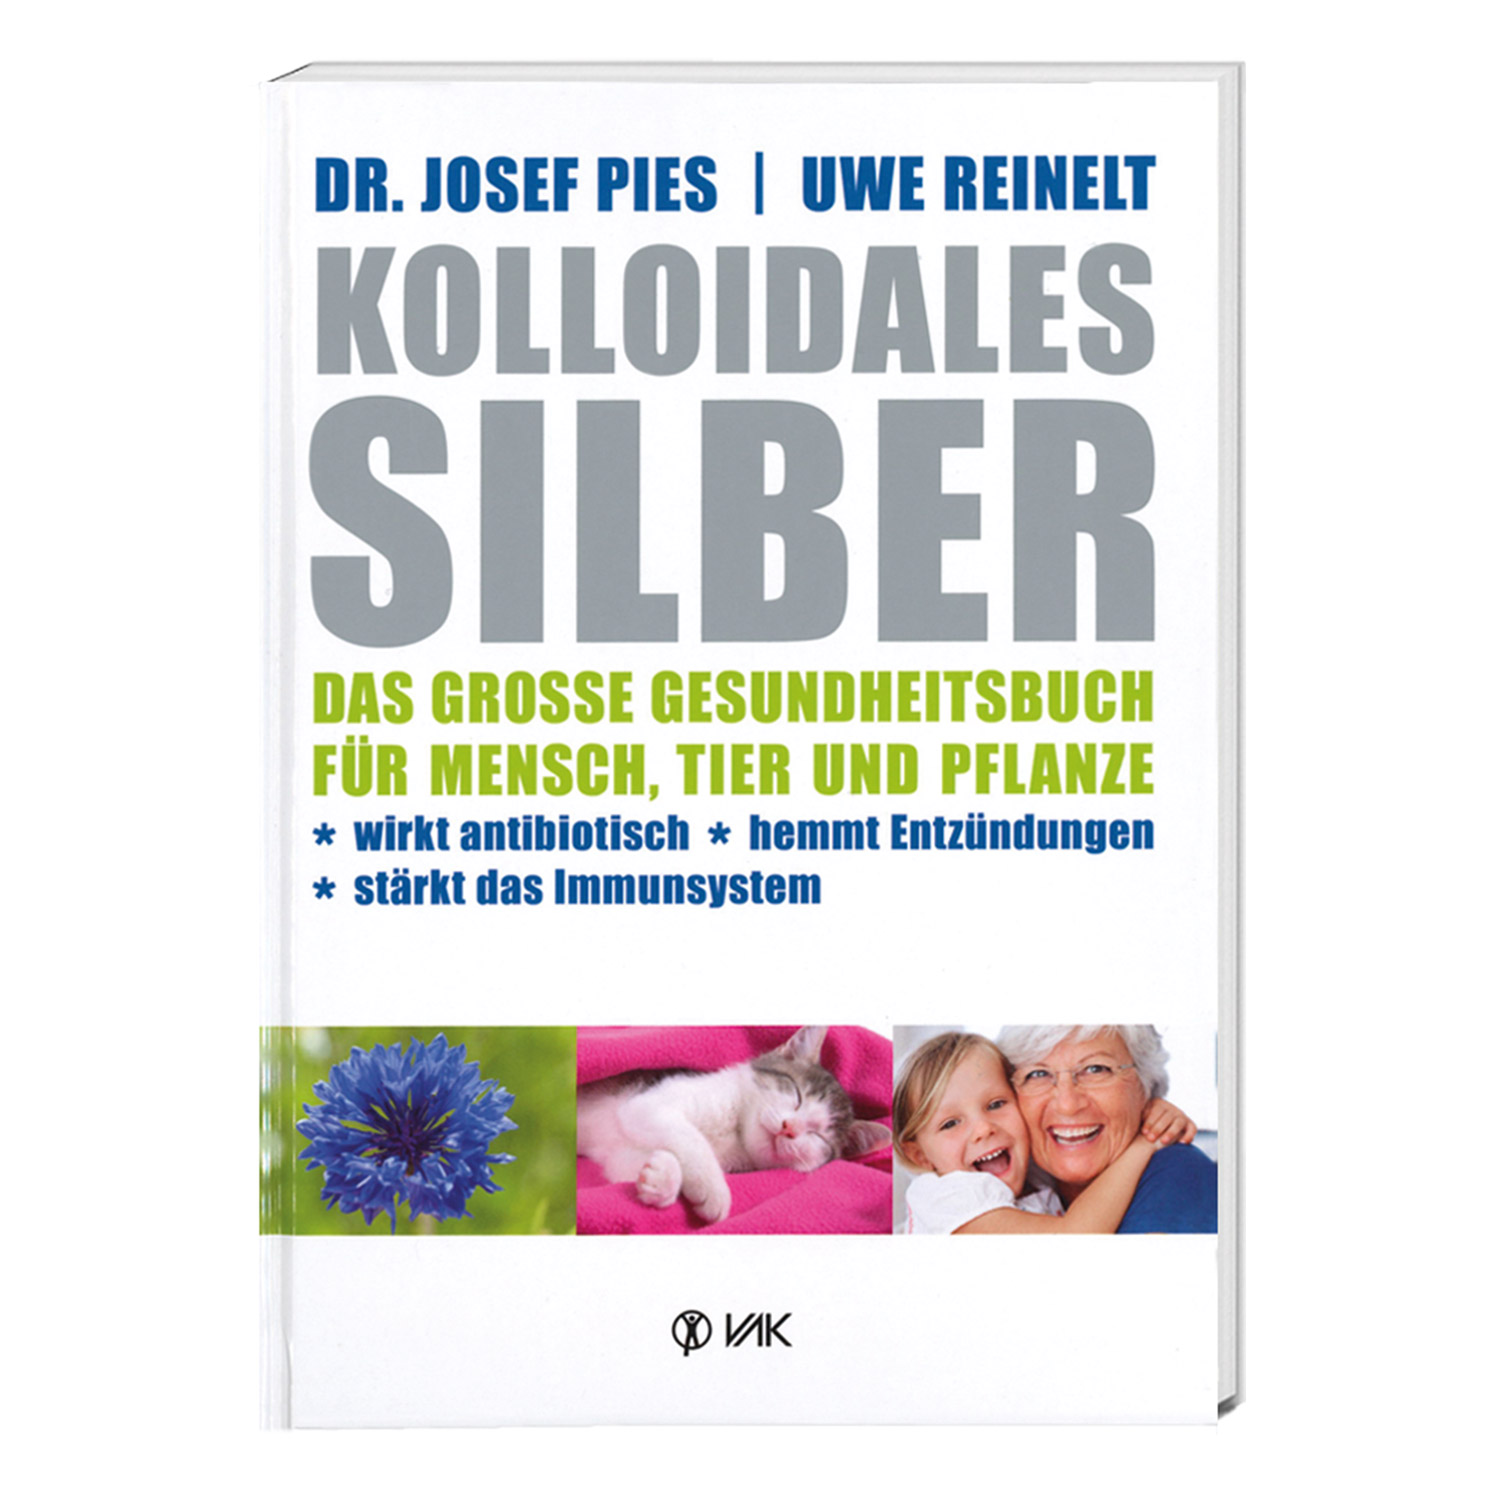 Kolloidales Silber - Buch - Dr. Josef Pies - Uwe Reinelt - 220 Seiten